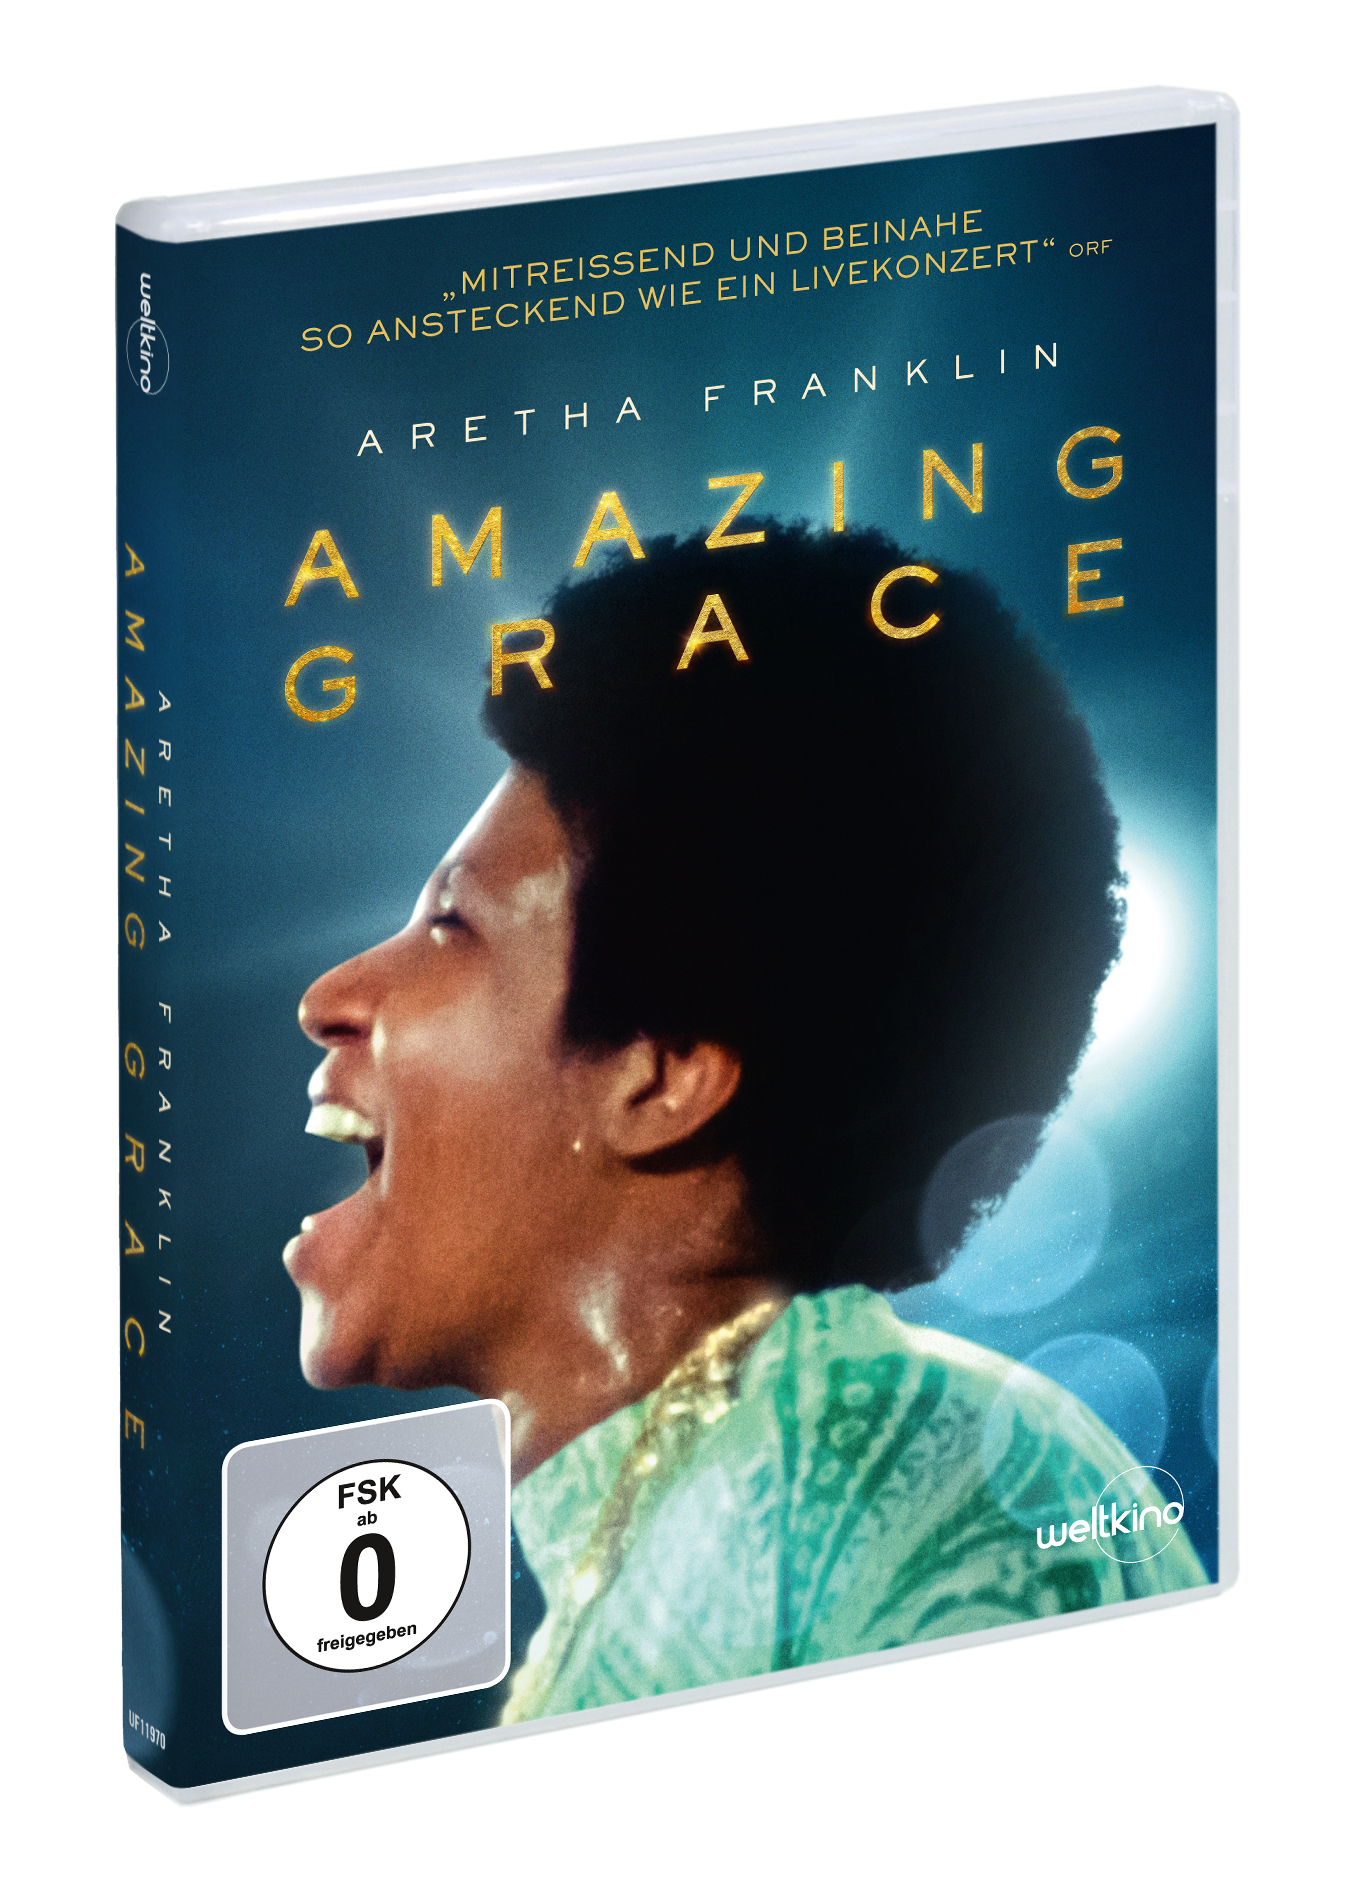 Auf dem Cover der DVD zu Aretha Franklin: Amazing Grace ist die Soulsängerin in grün-weißem Gewand inbrünstig singend zu sehen.